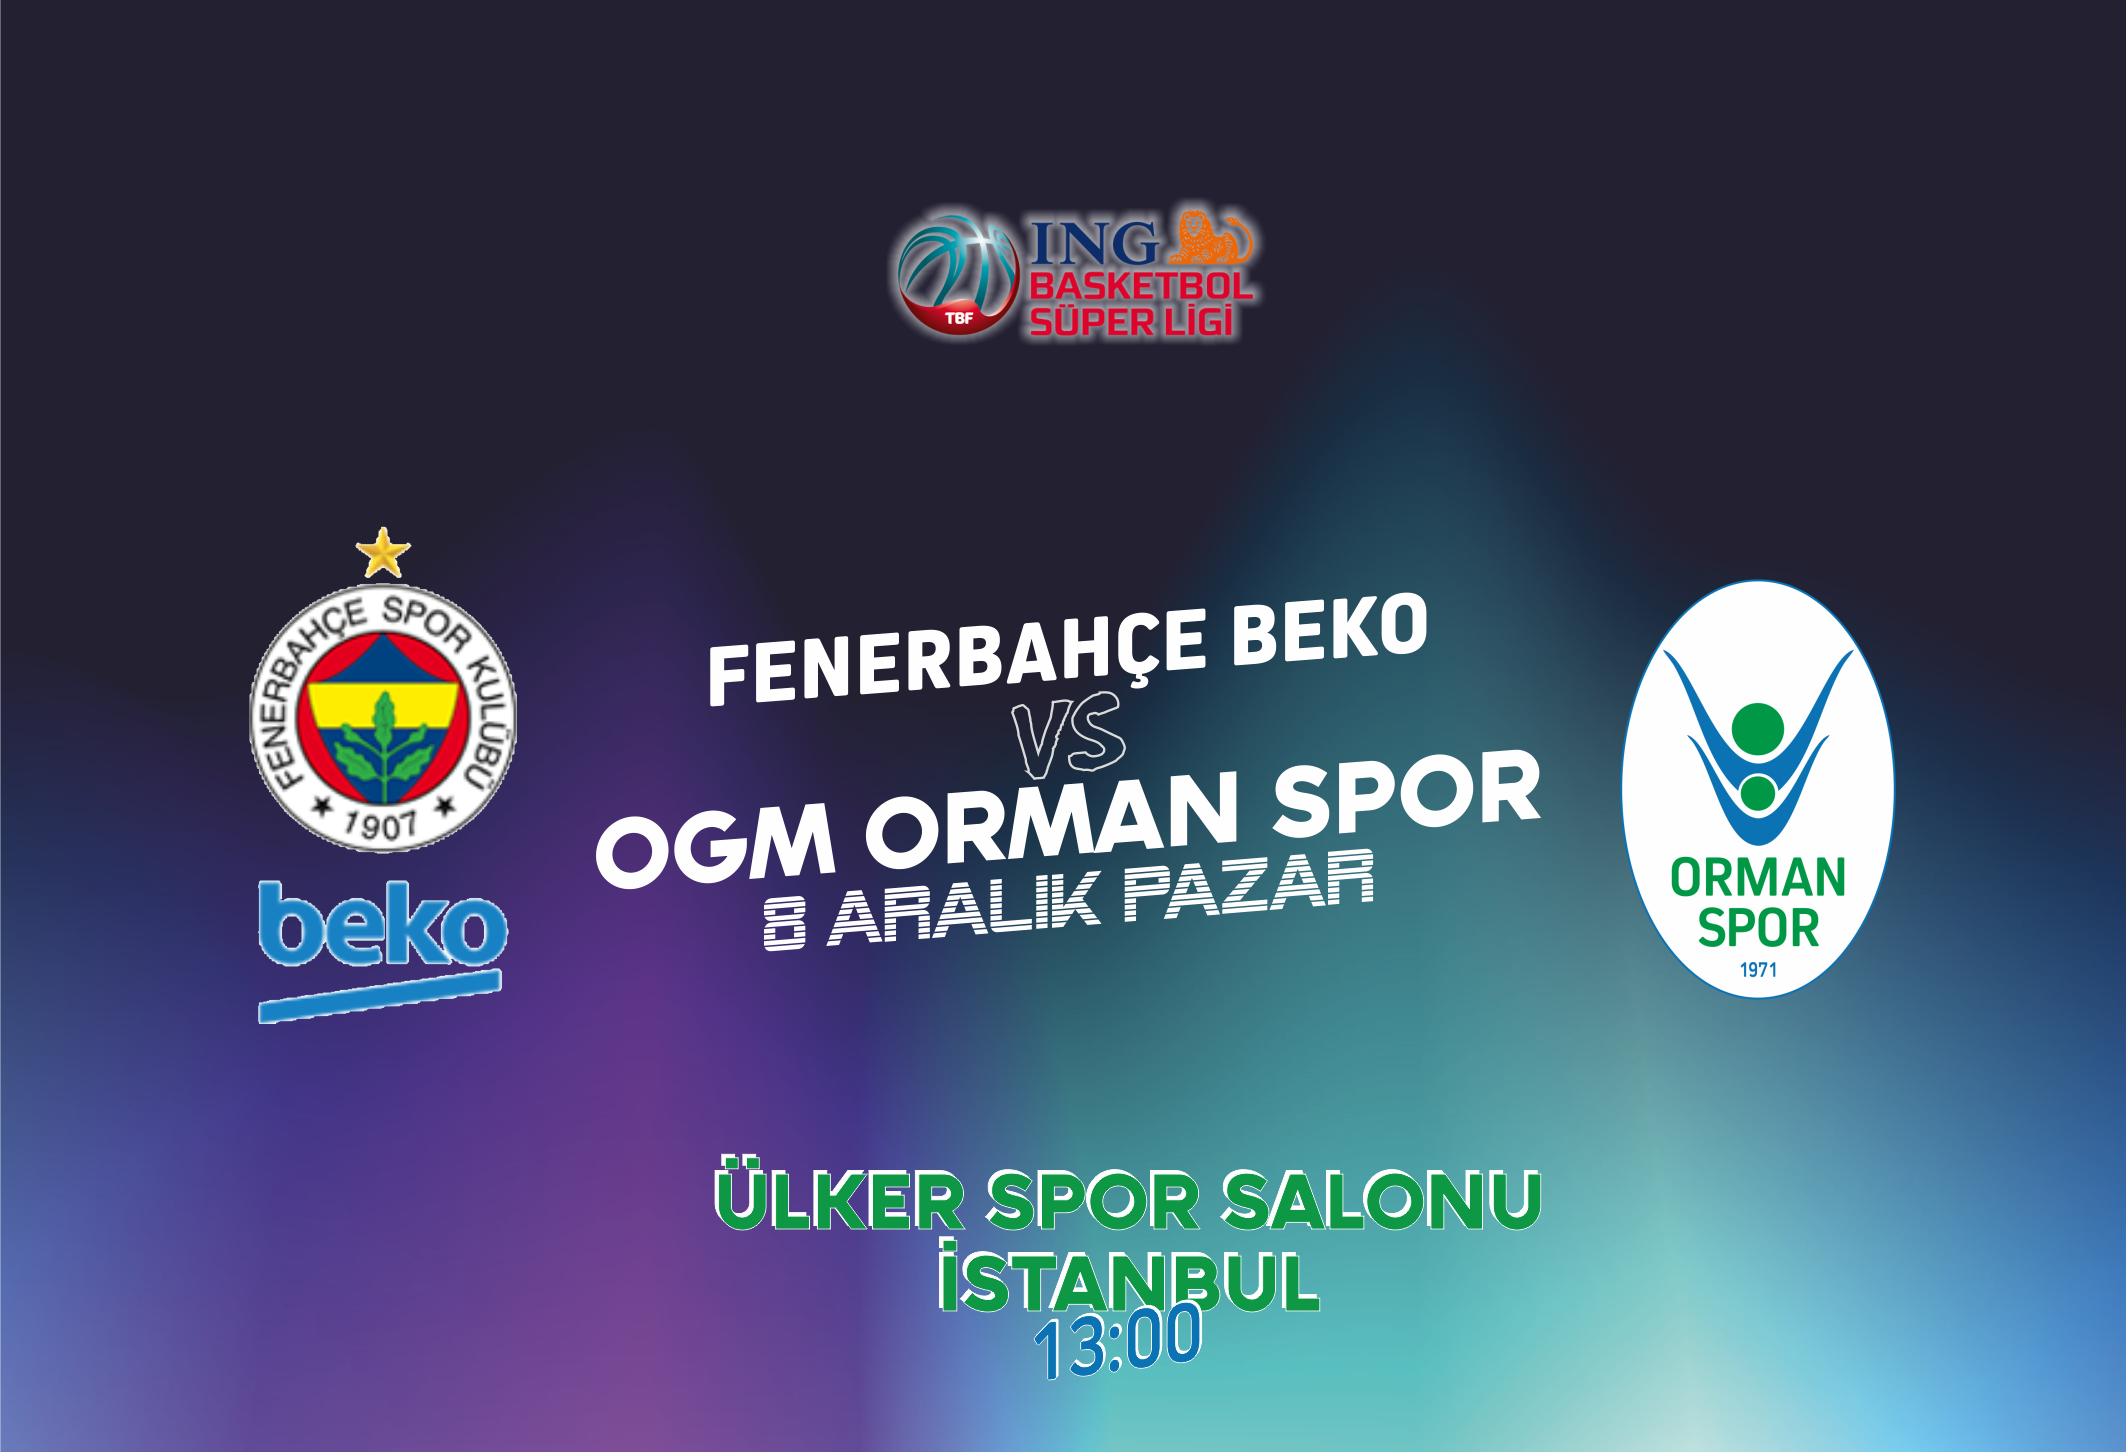 Fenerbahçe Beko 85-52 OGM Ormanspor - 11. Hafta Özeti